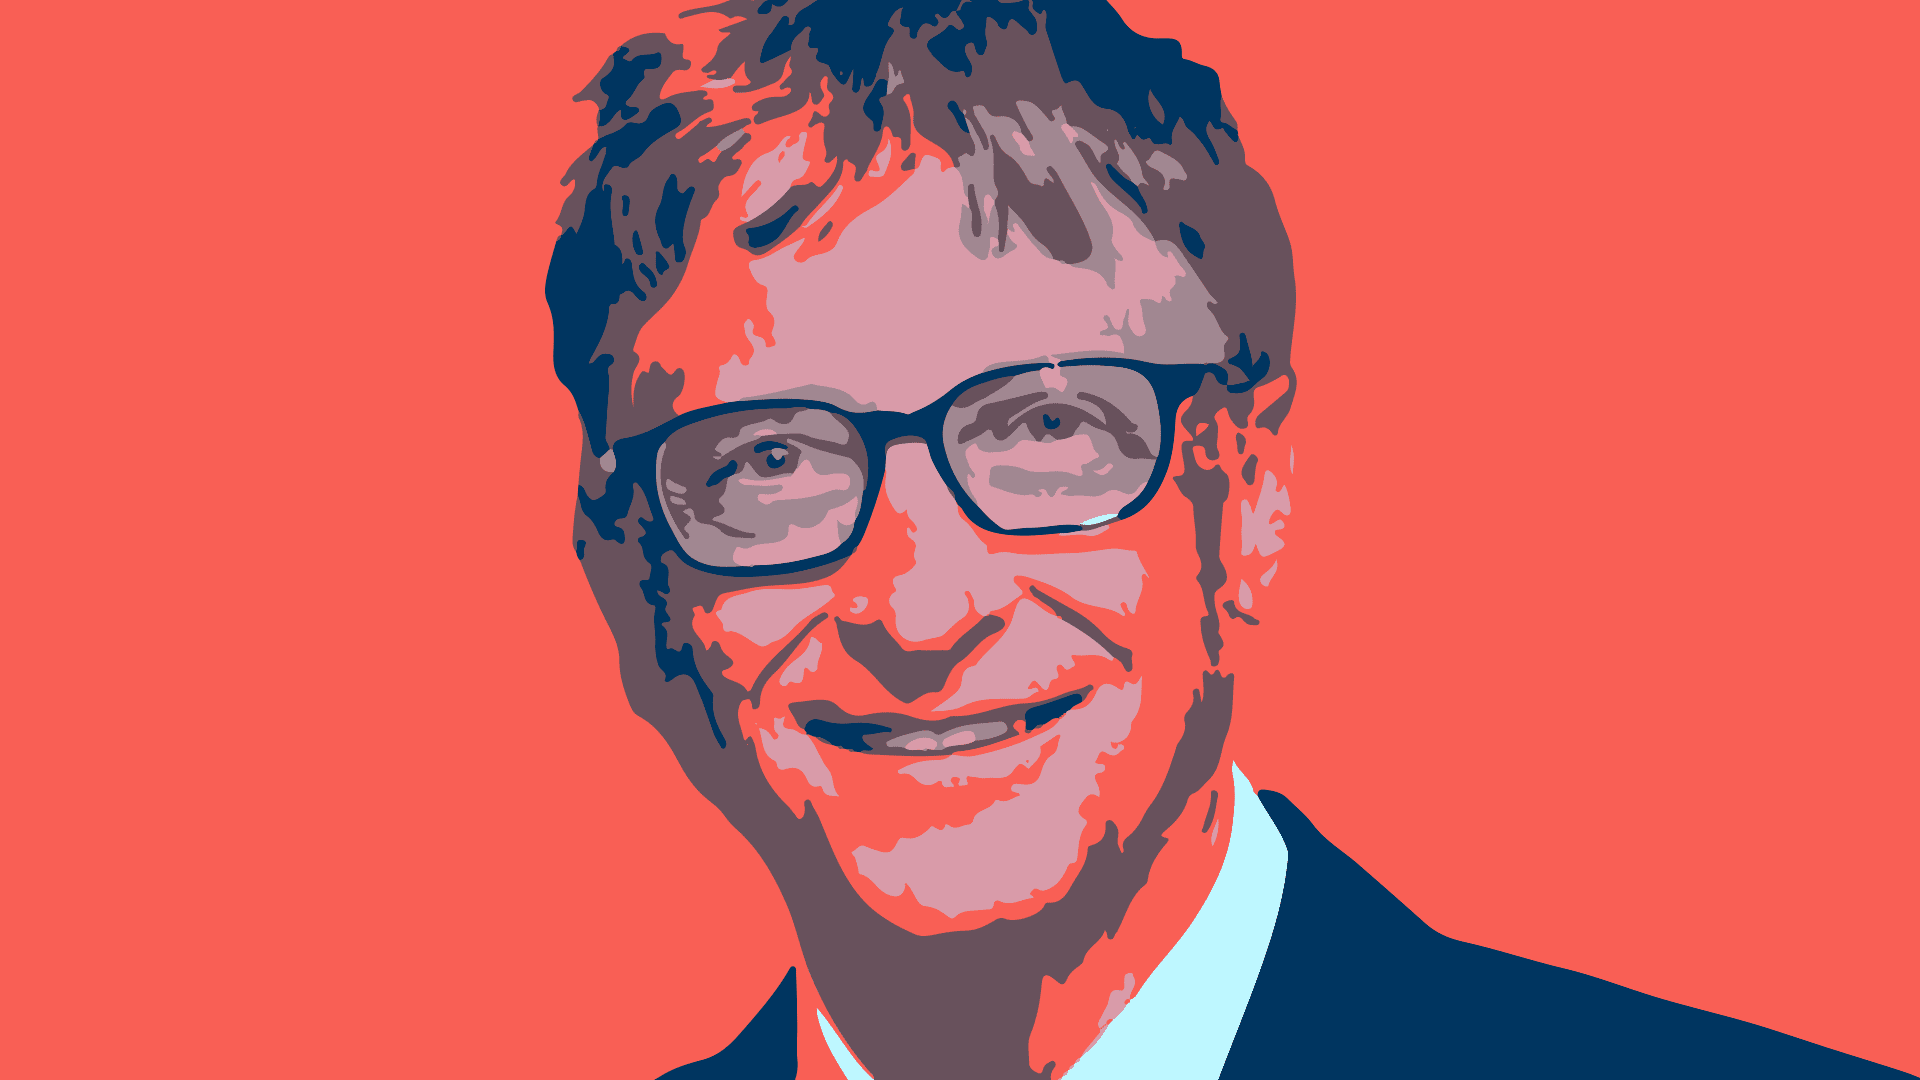 Gates nói về công việc ông đang làm để chống biến đổi khí hậu, cả thông qua Quỹ Gates bằng cách hỗ trợ các công ty khí hậu giai đoạn đầu với công ty đầu tư của ông, Breakthrough Energy Ventures. Ảnh: @AFP.